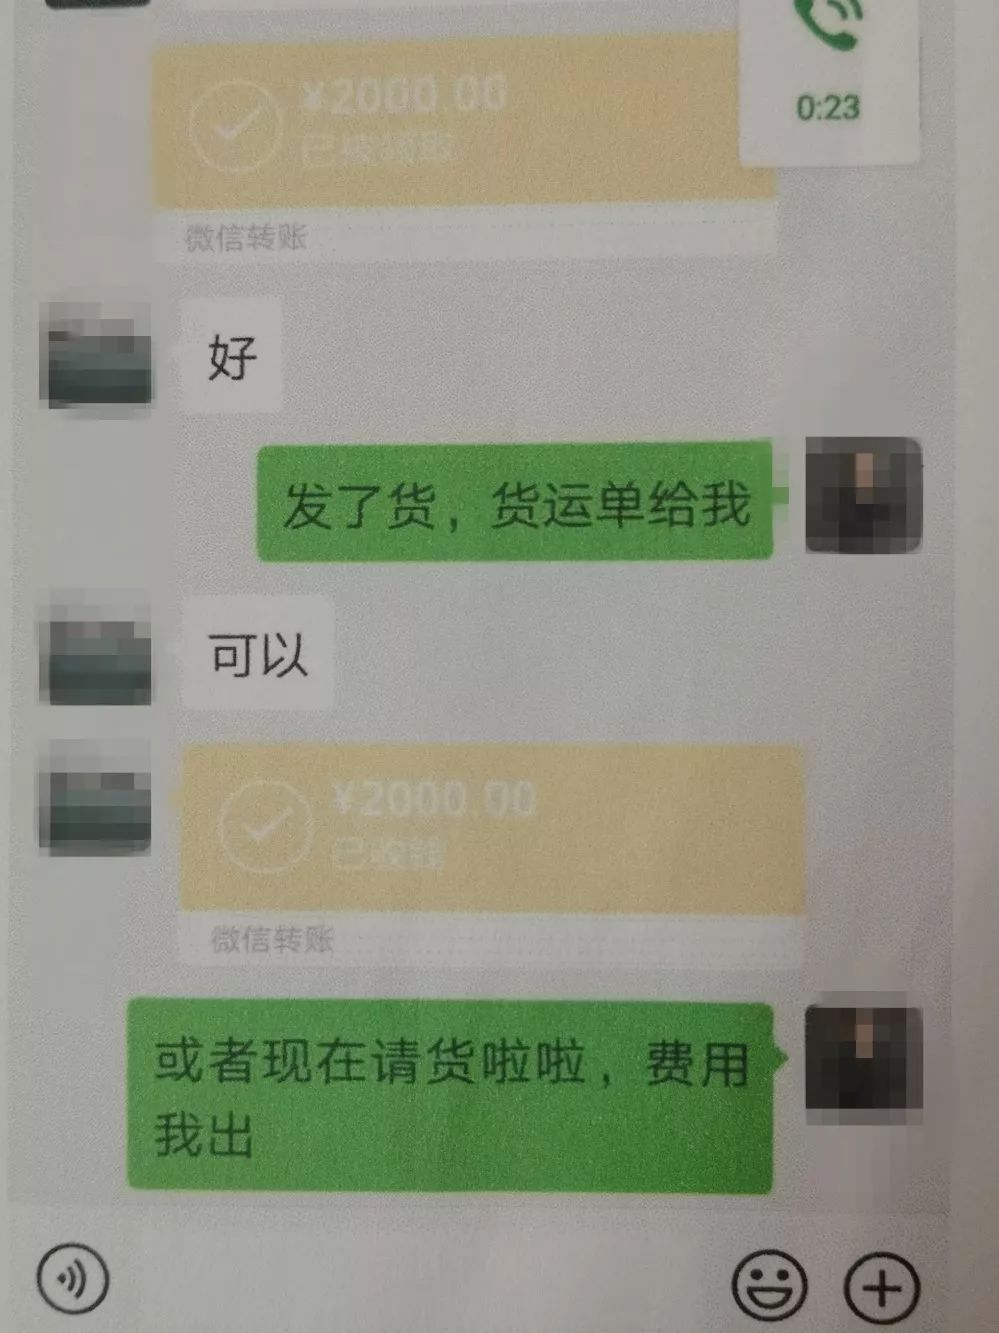 韶关男子在微信买口罩付款4000元后被拉黑被骗过程曝光